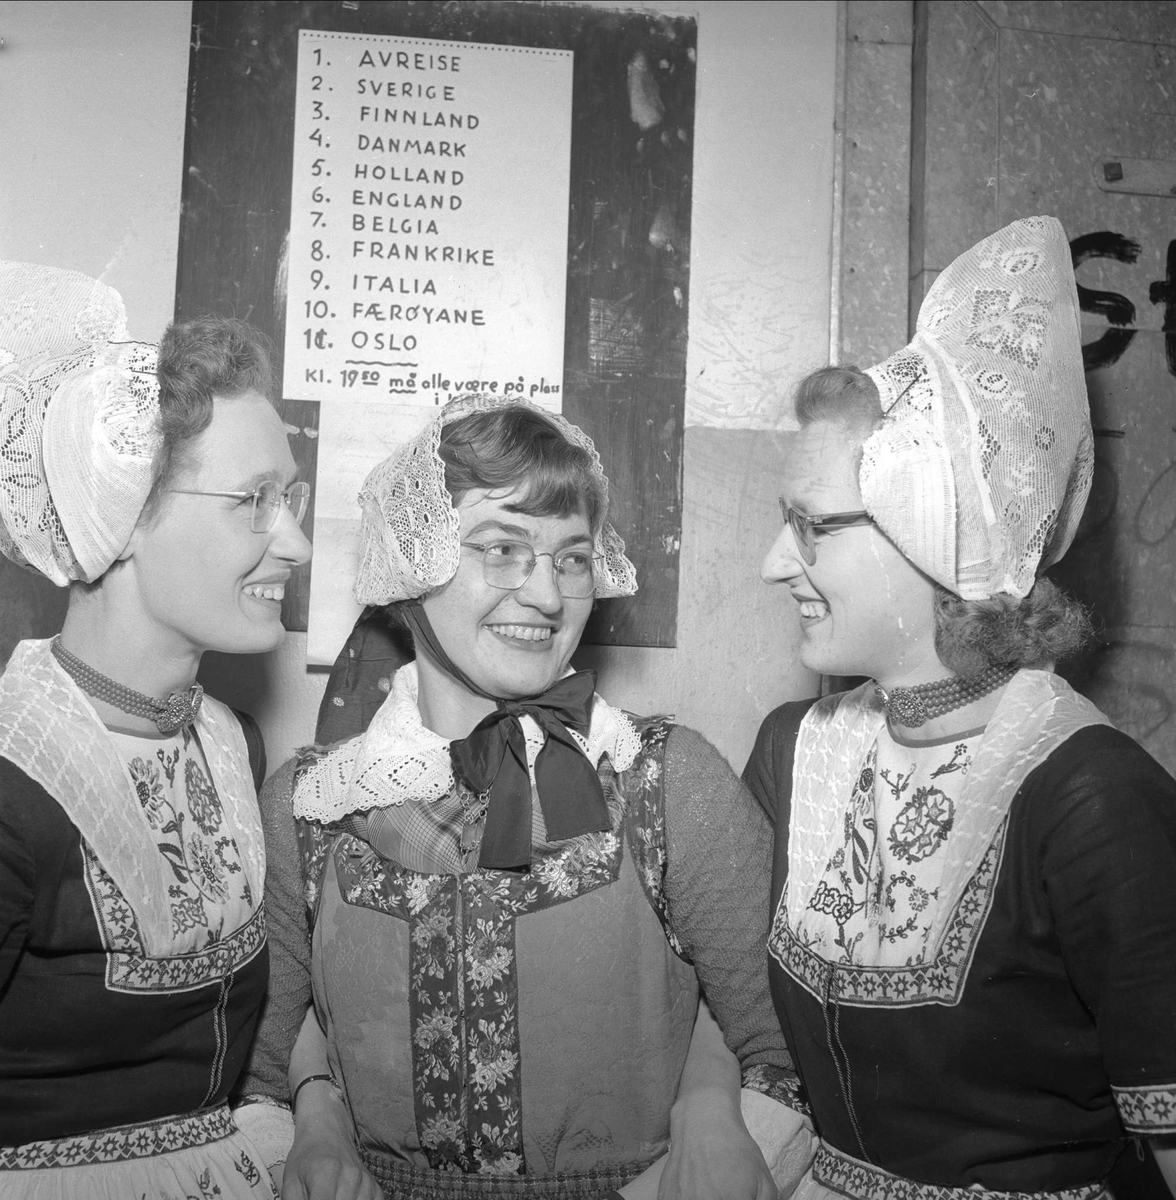 Kvinner i kostymer. Mars 1954. Bygdelag. Teatersalen, ant. fra stykket "Rundreise".